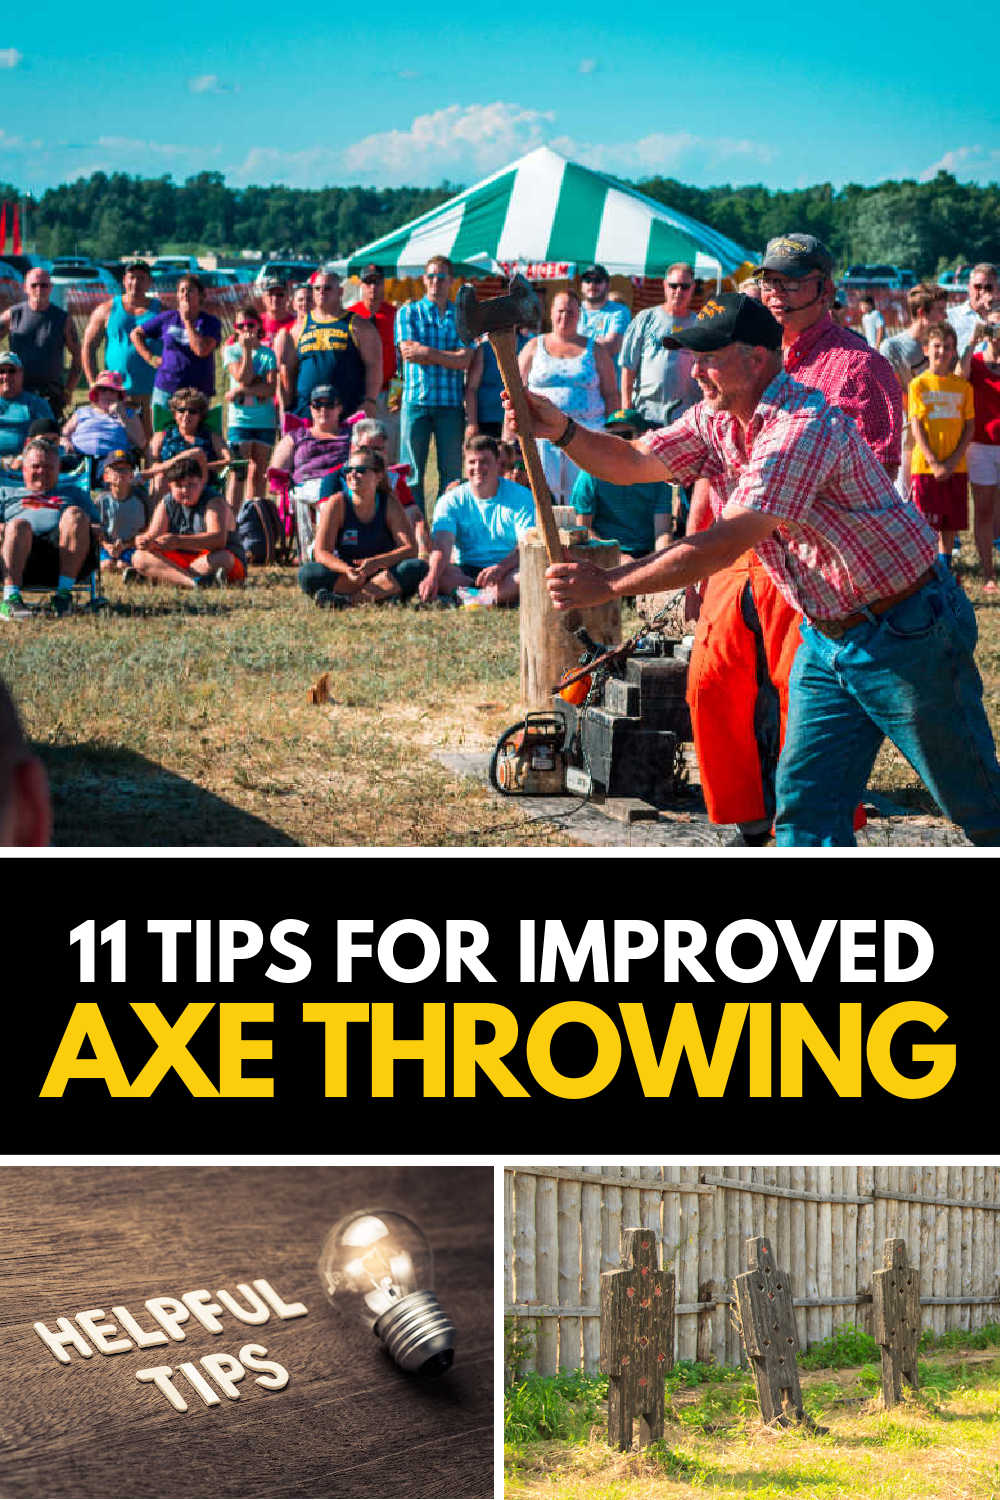 Axe throwing tips